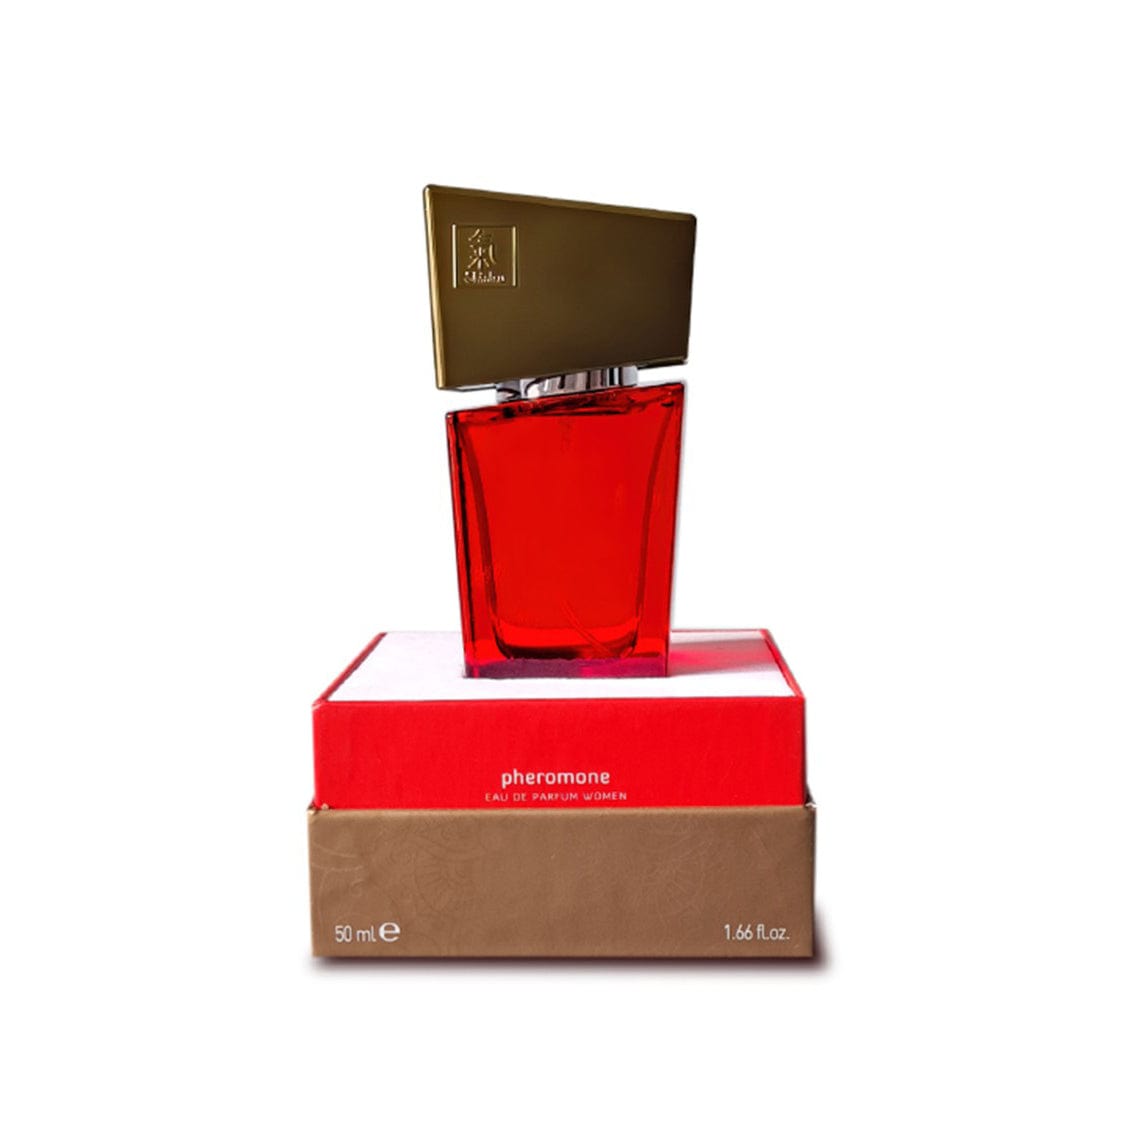 Shiatsu - Pheromone Eau de Parfum Perfume Spray Women 50ml (Red)    Pheromones